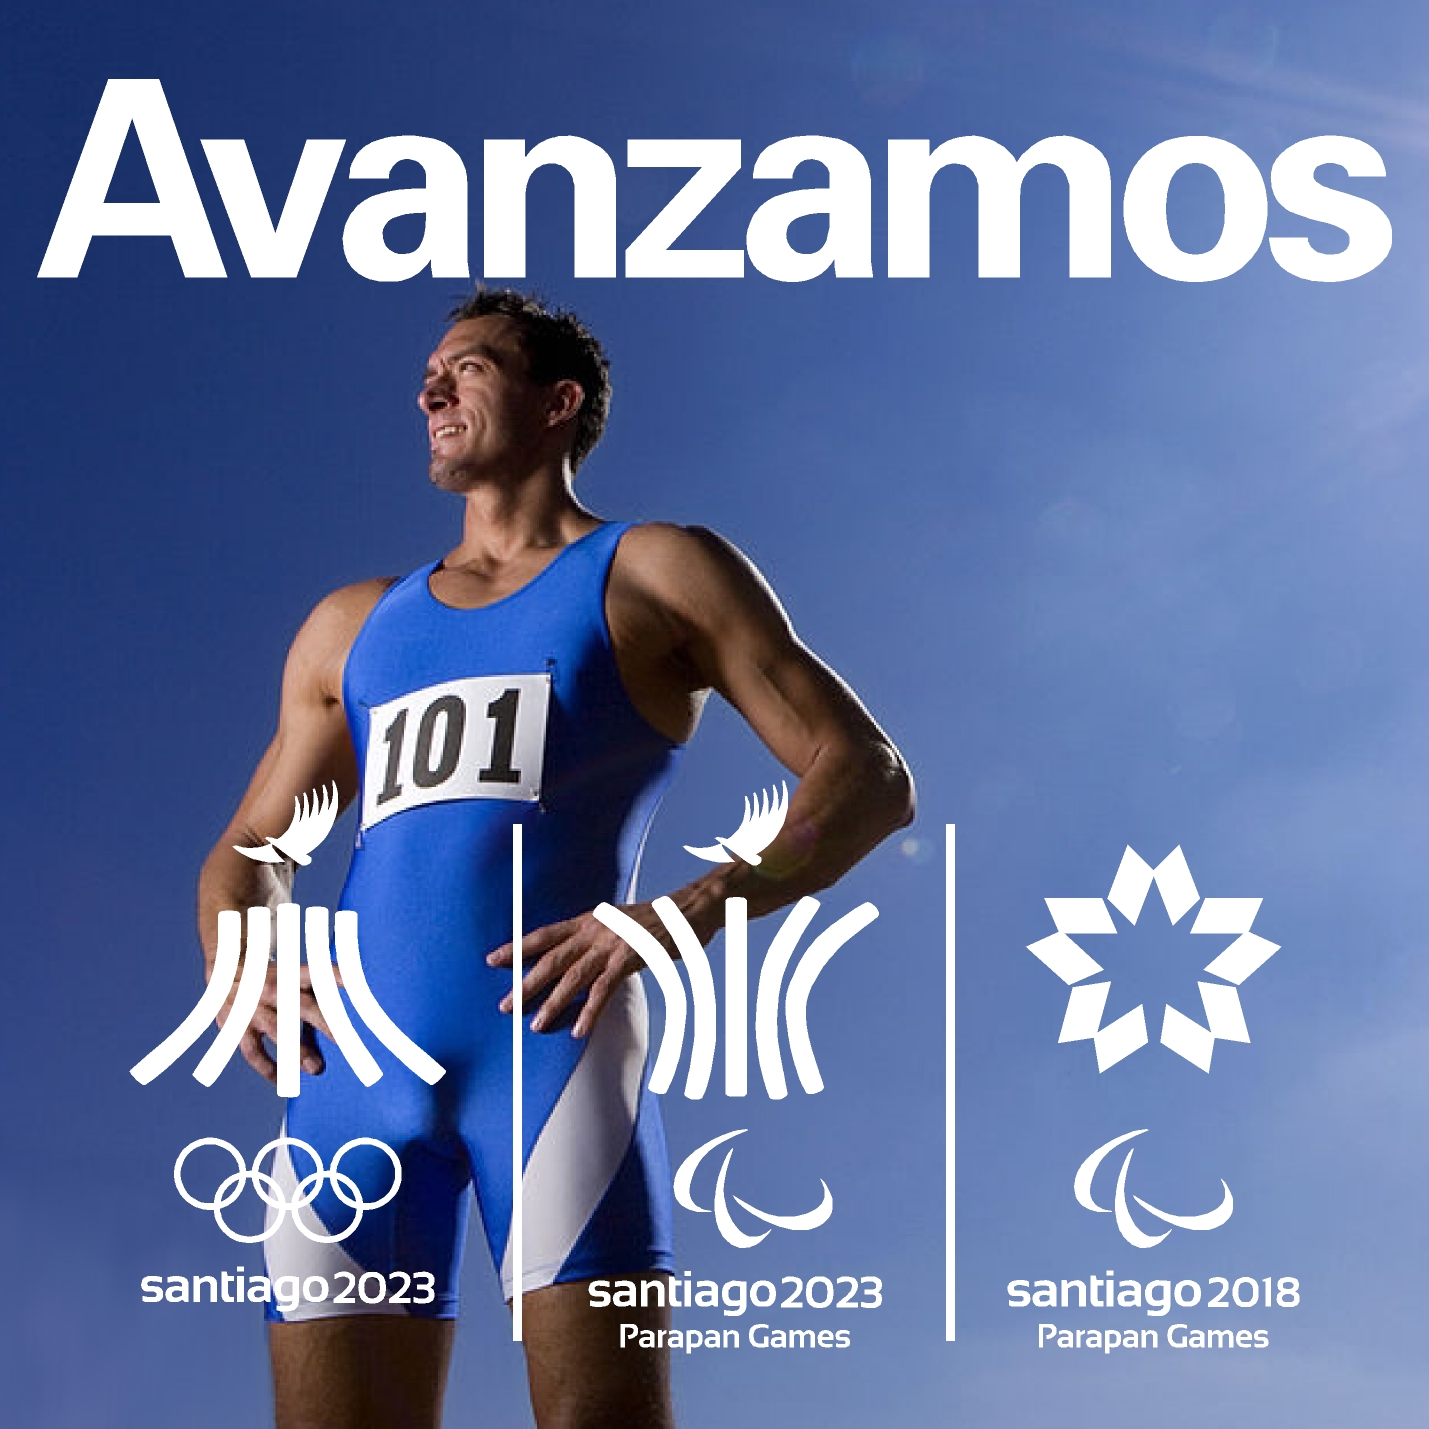 Avanzamos Juegos de Santiago 2018 - 2023 A10